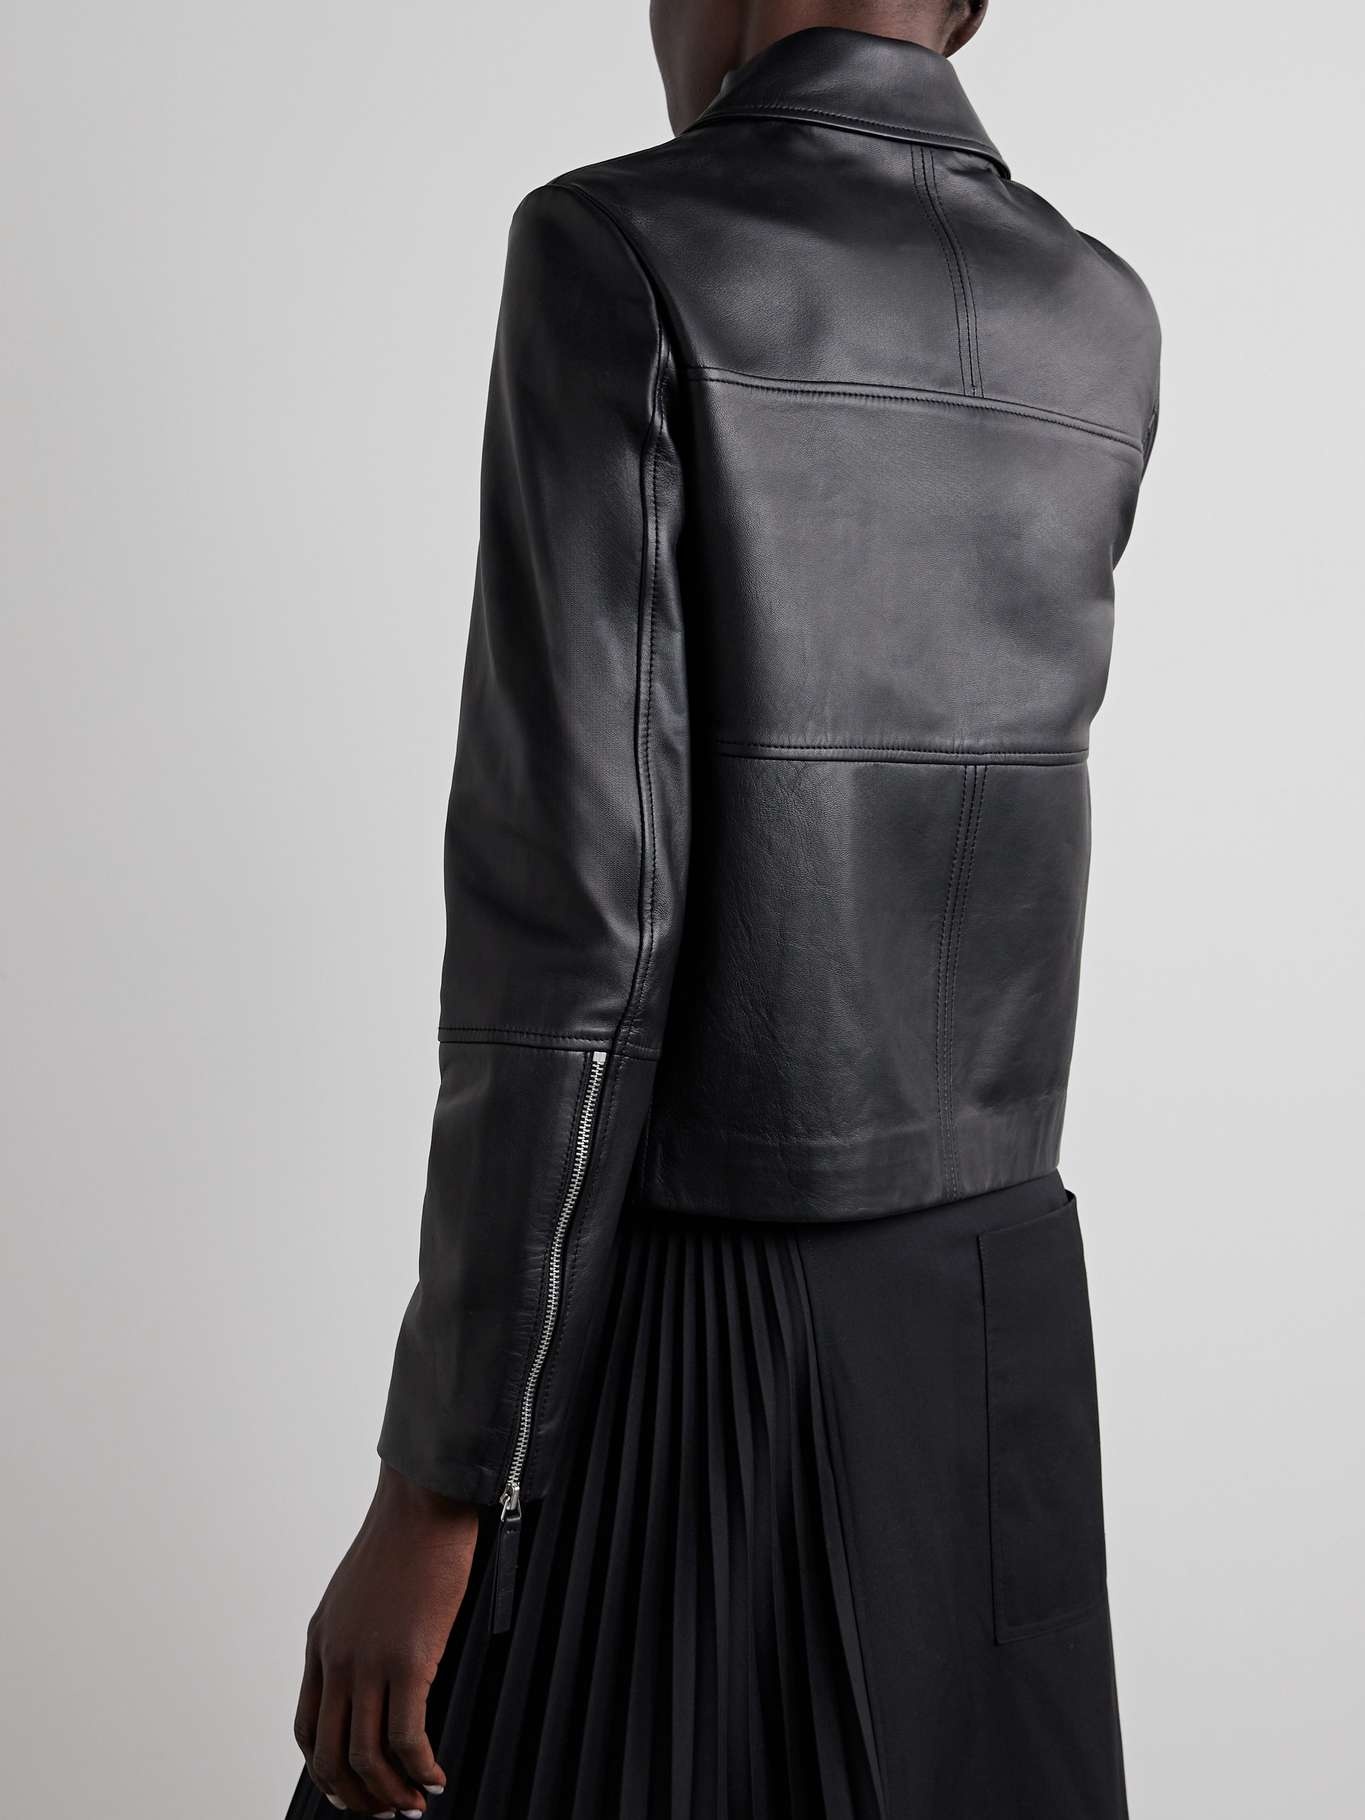 Annabel paneled leather jacket - 4